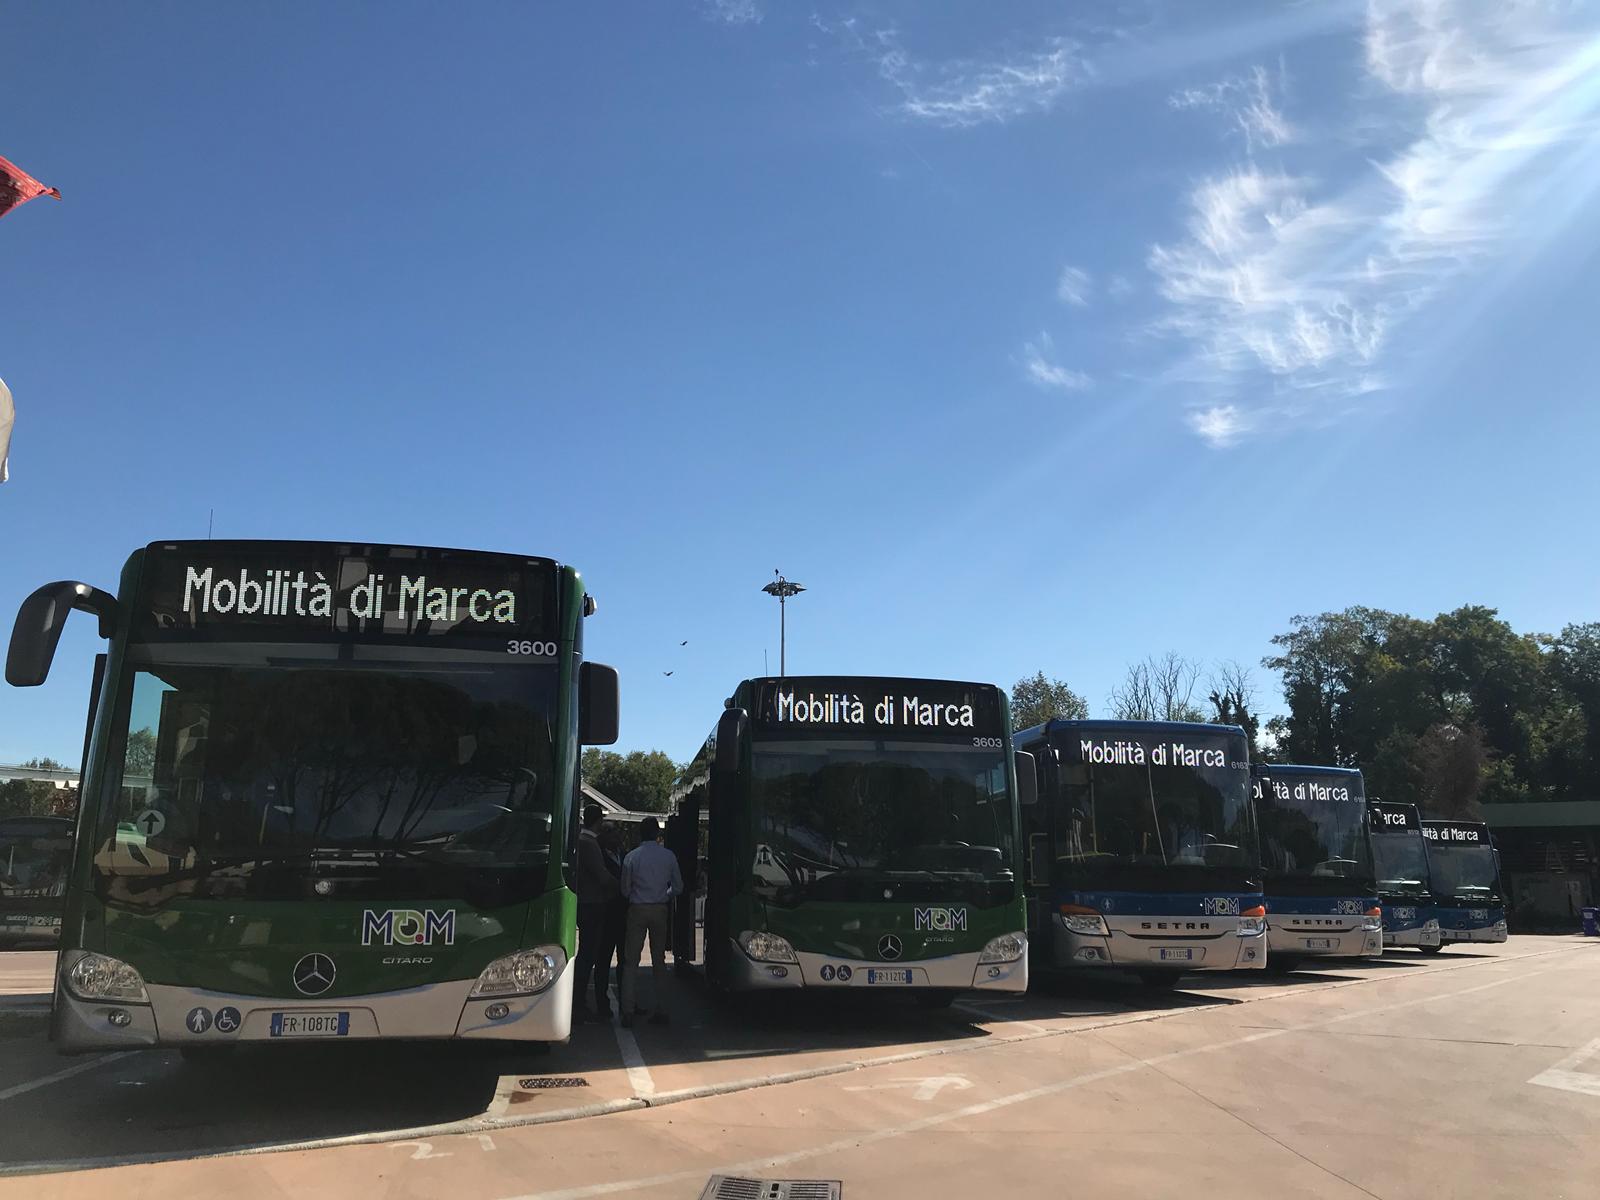 Trasporto pubblico locale: Regione Veneto approva riparto di 19 milioni per l’acquisto di nuovi bus